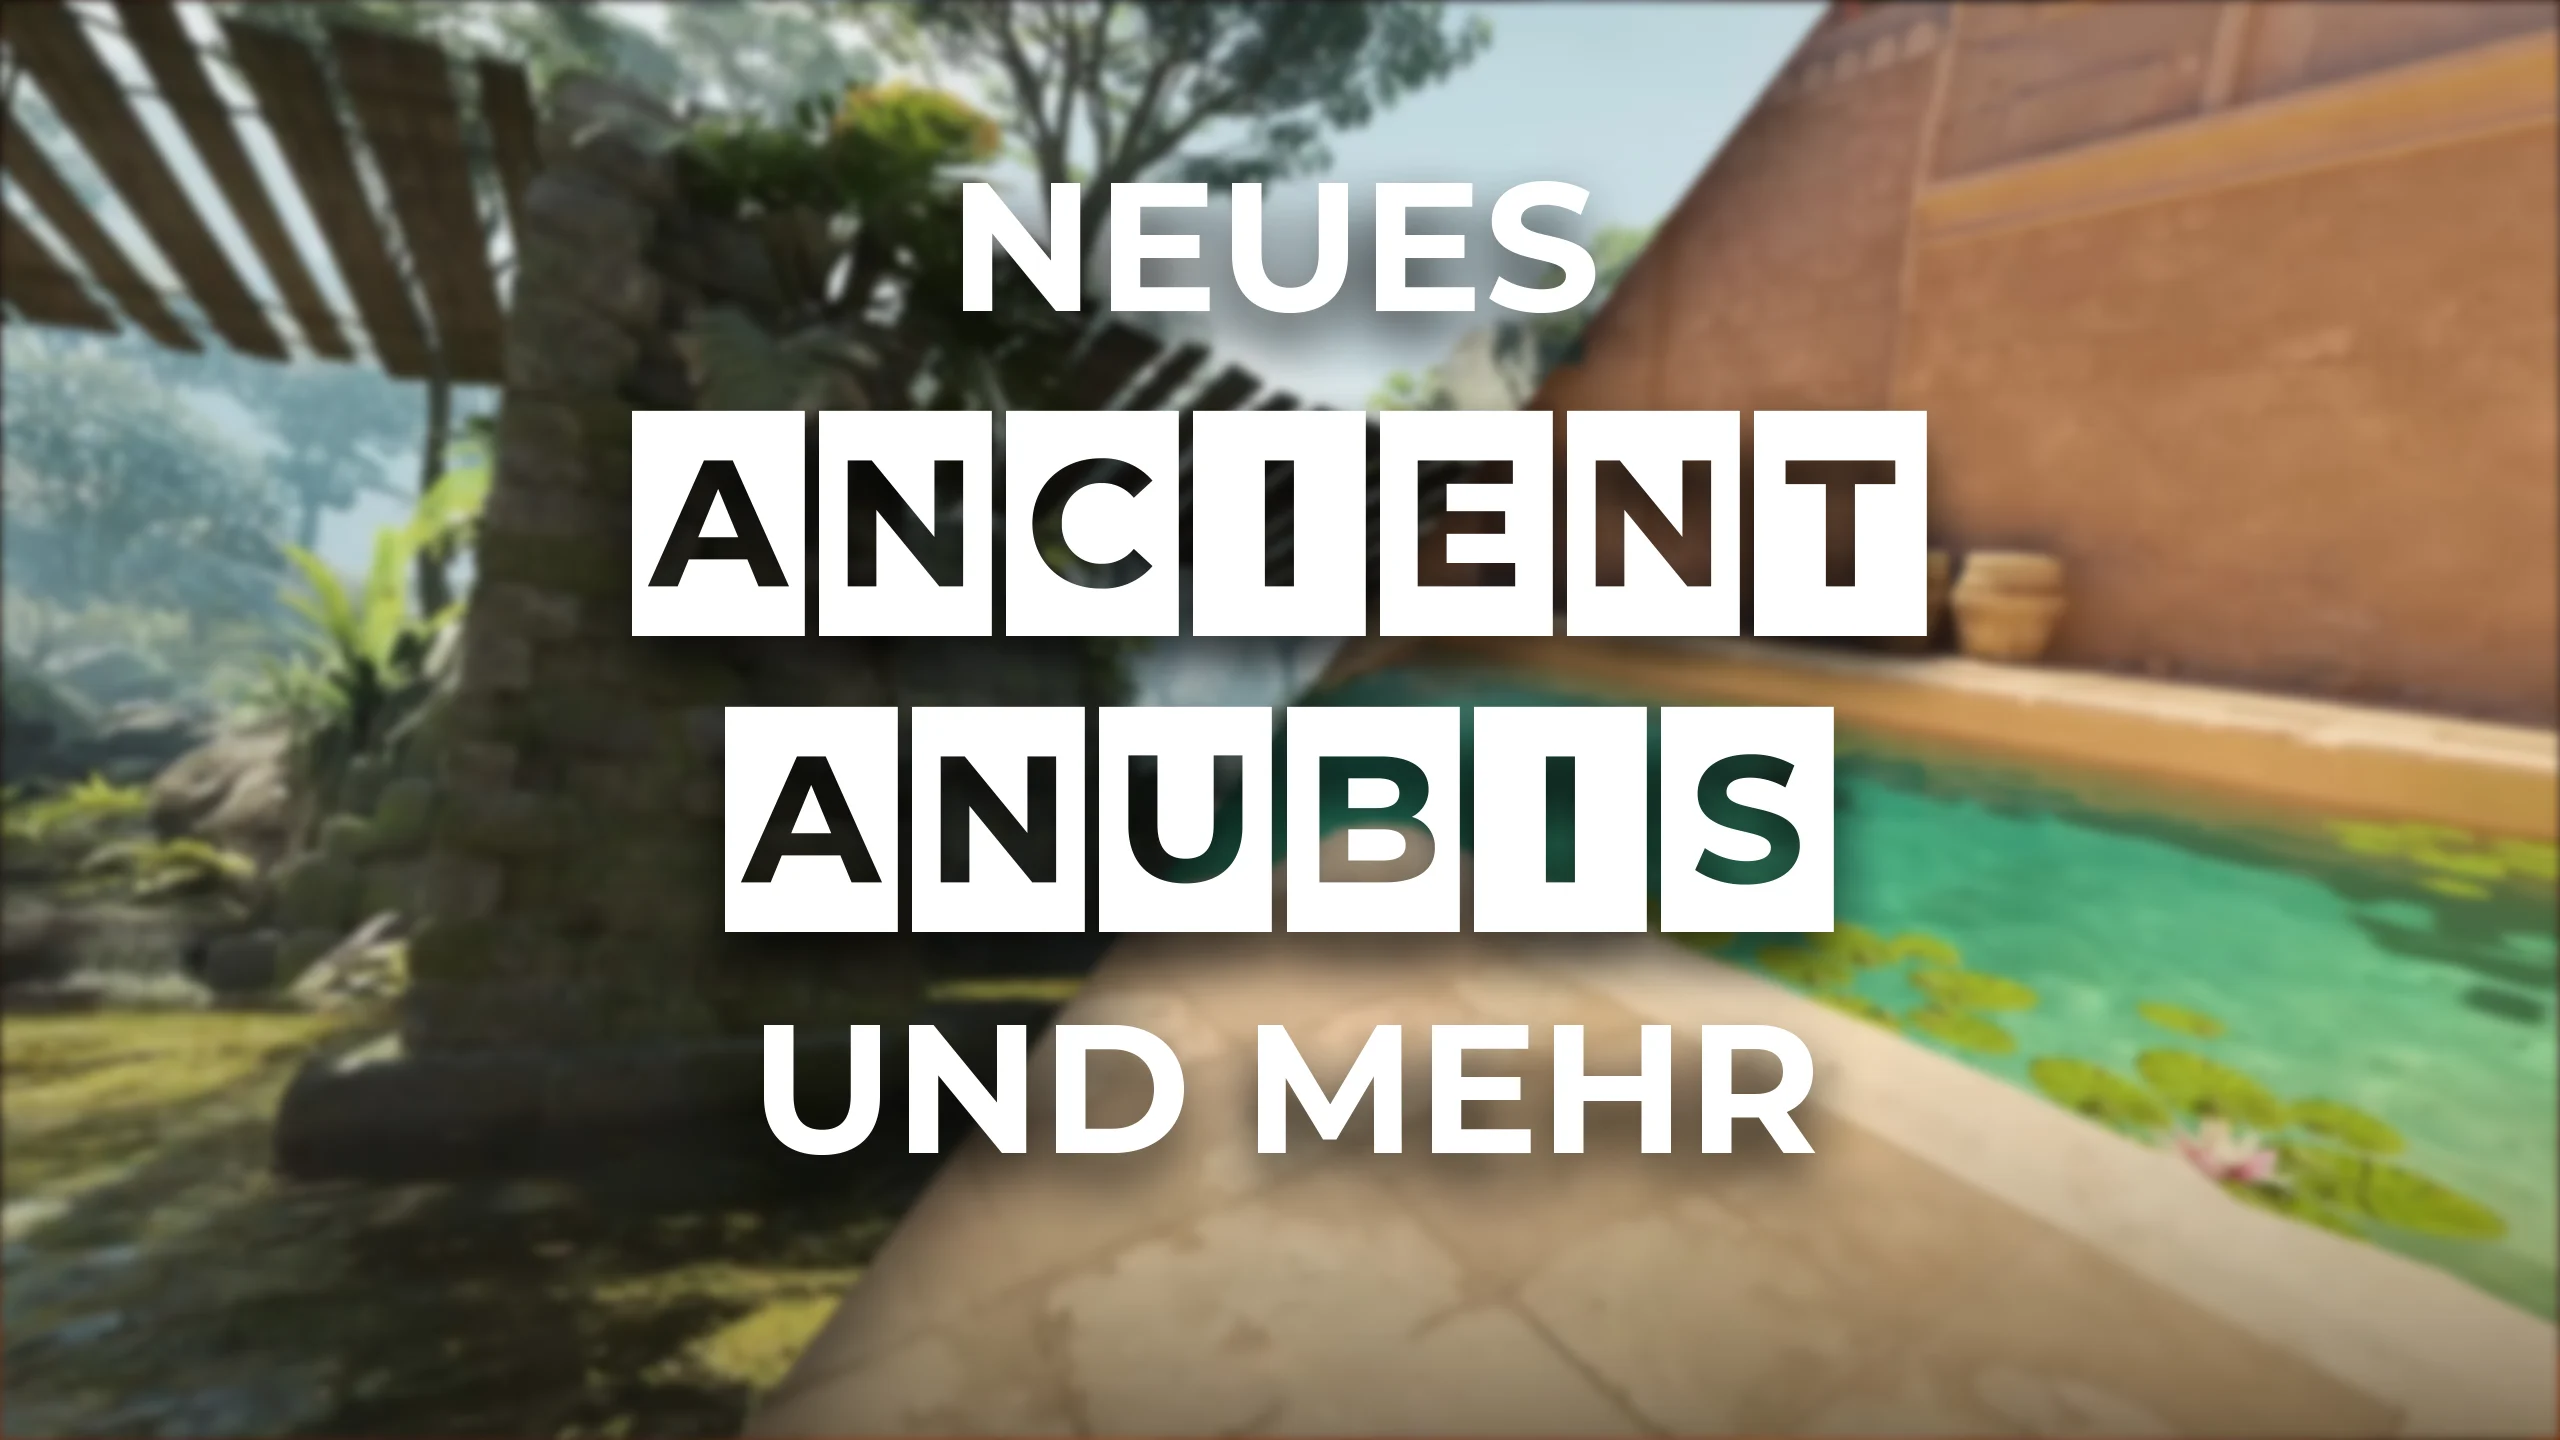 Ancient, Anubis und weitere lustige Änderungen im neusten CS2 Update